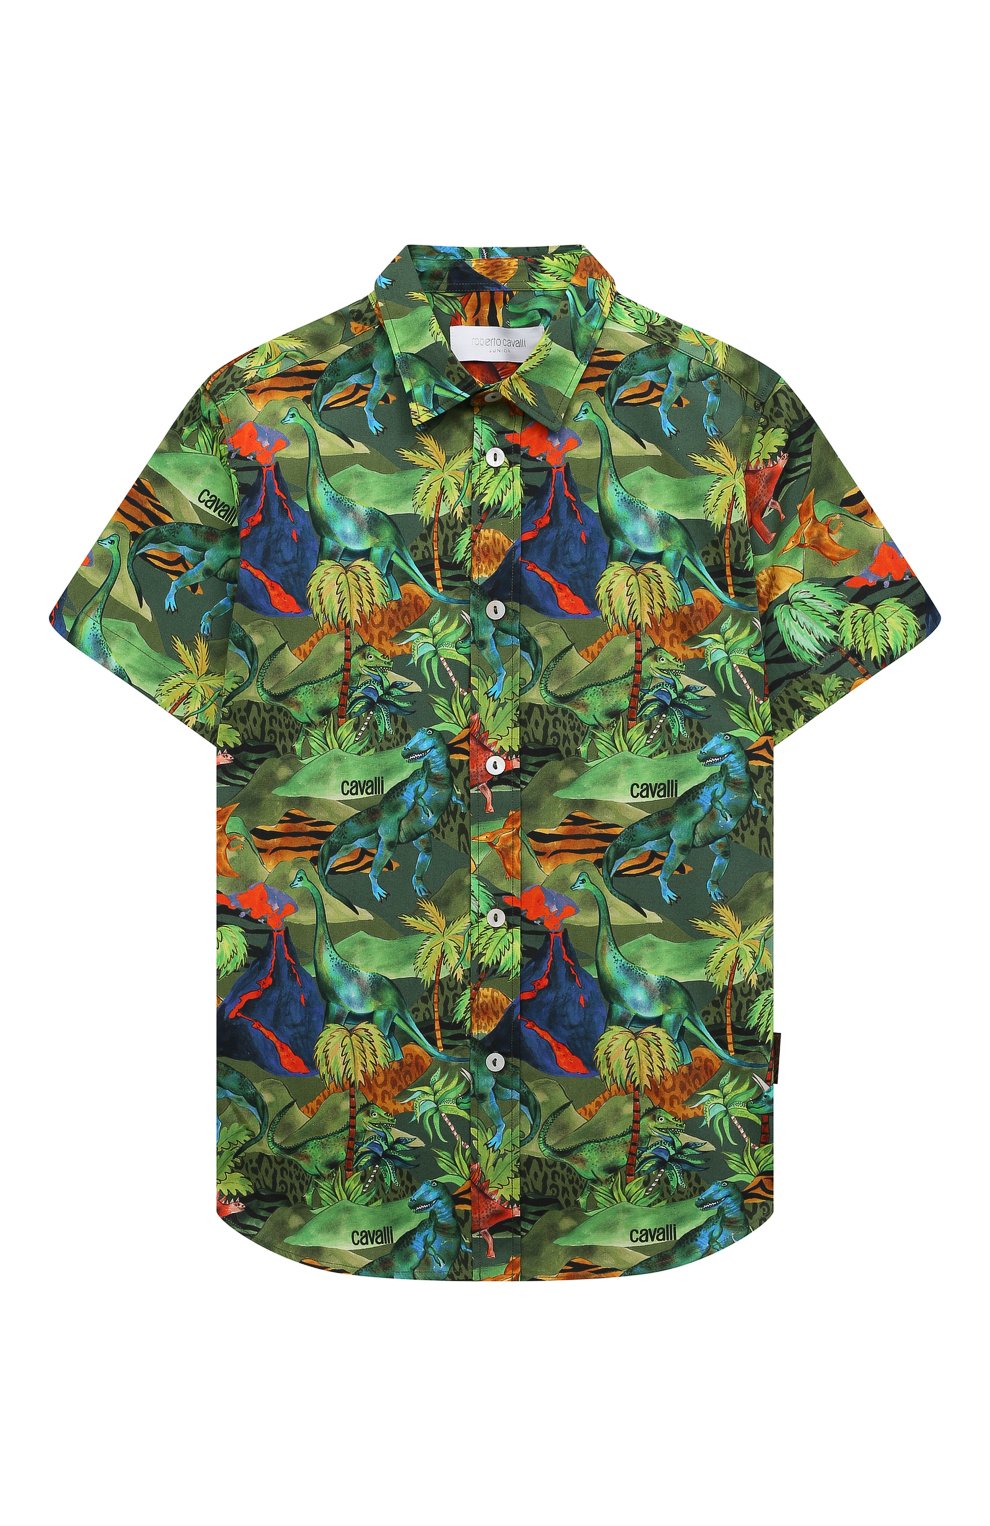 Рубашки Roberto Cavalli, Хлопковая рубашка Roberto Cavalli, Италия, Зелёный, Хлопок: 100%;, 13379520  - купить